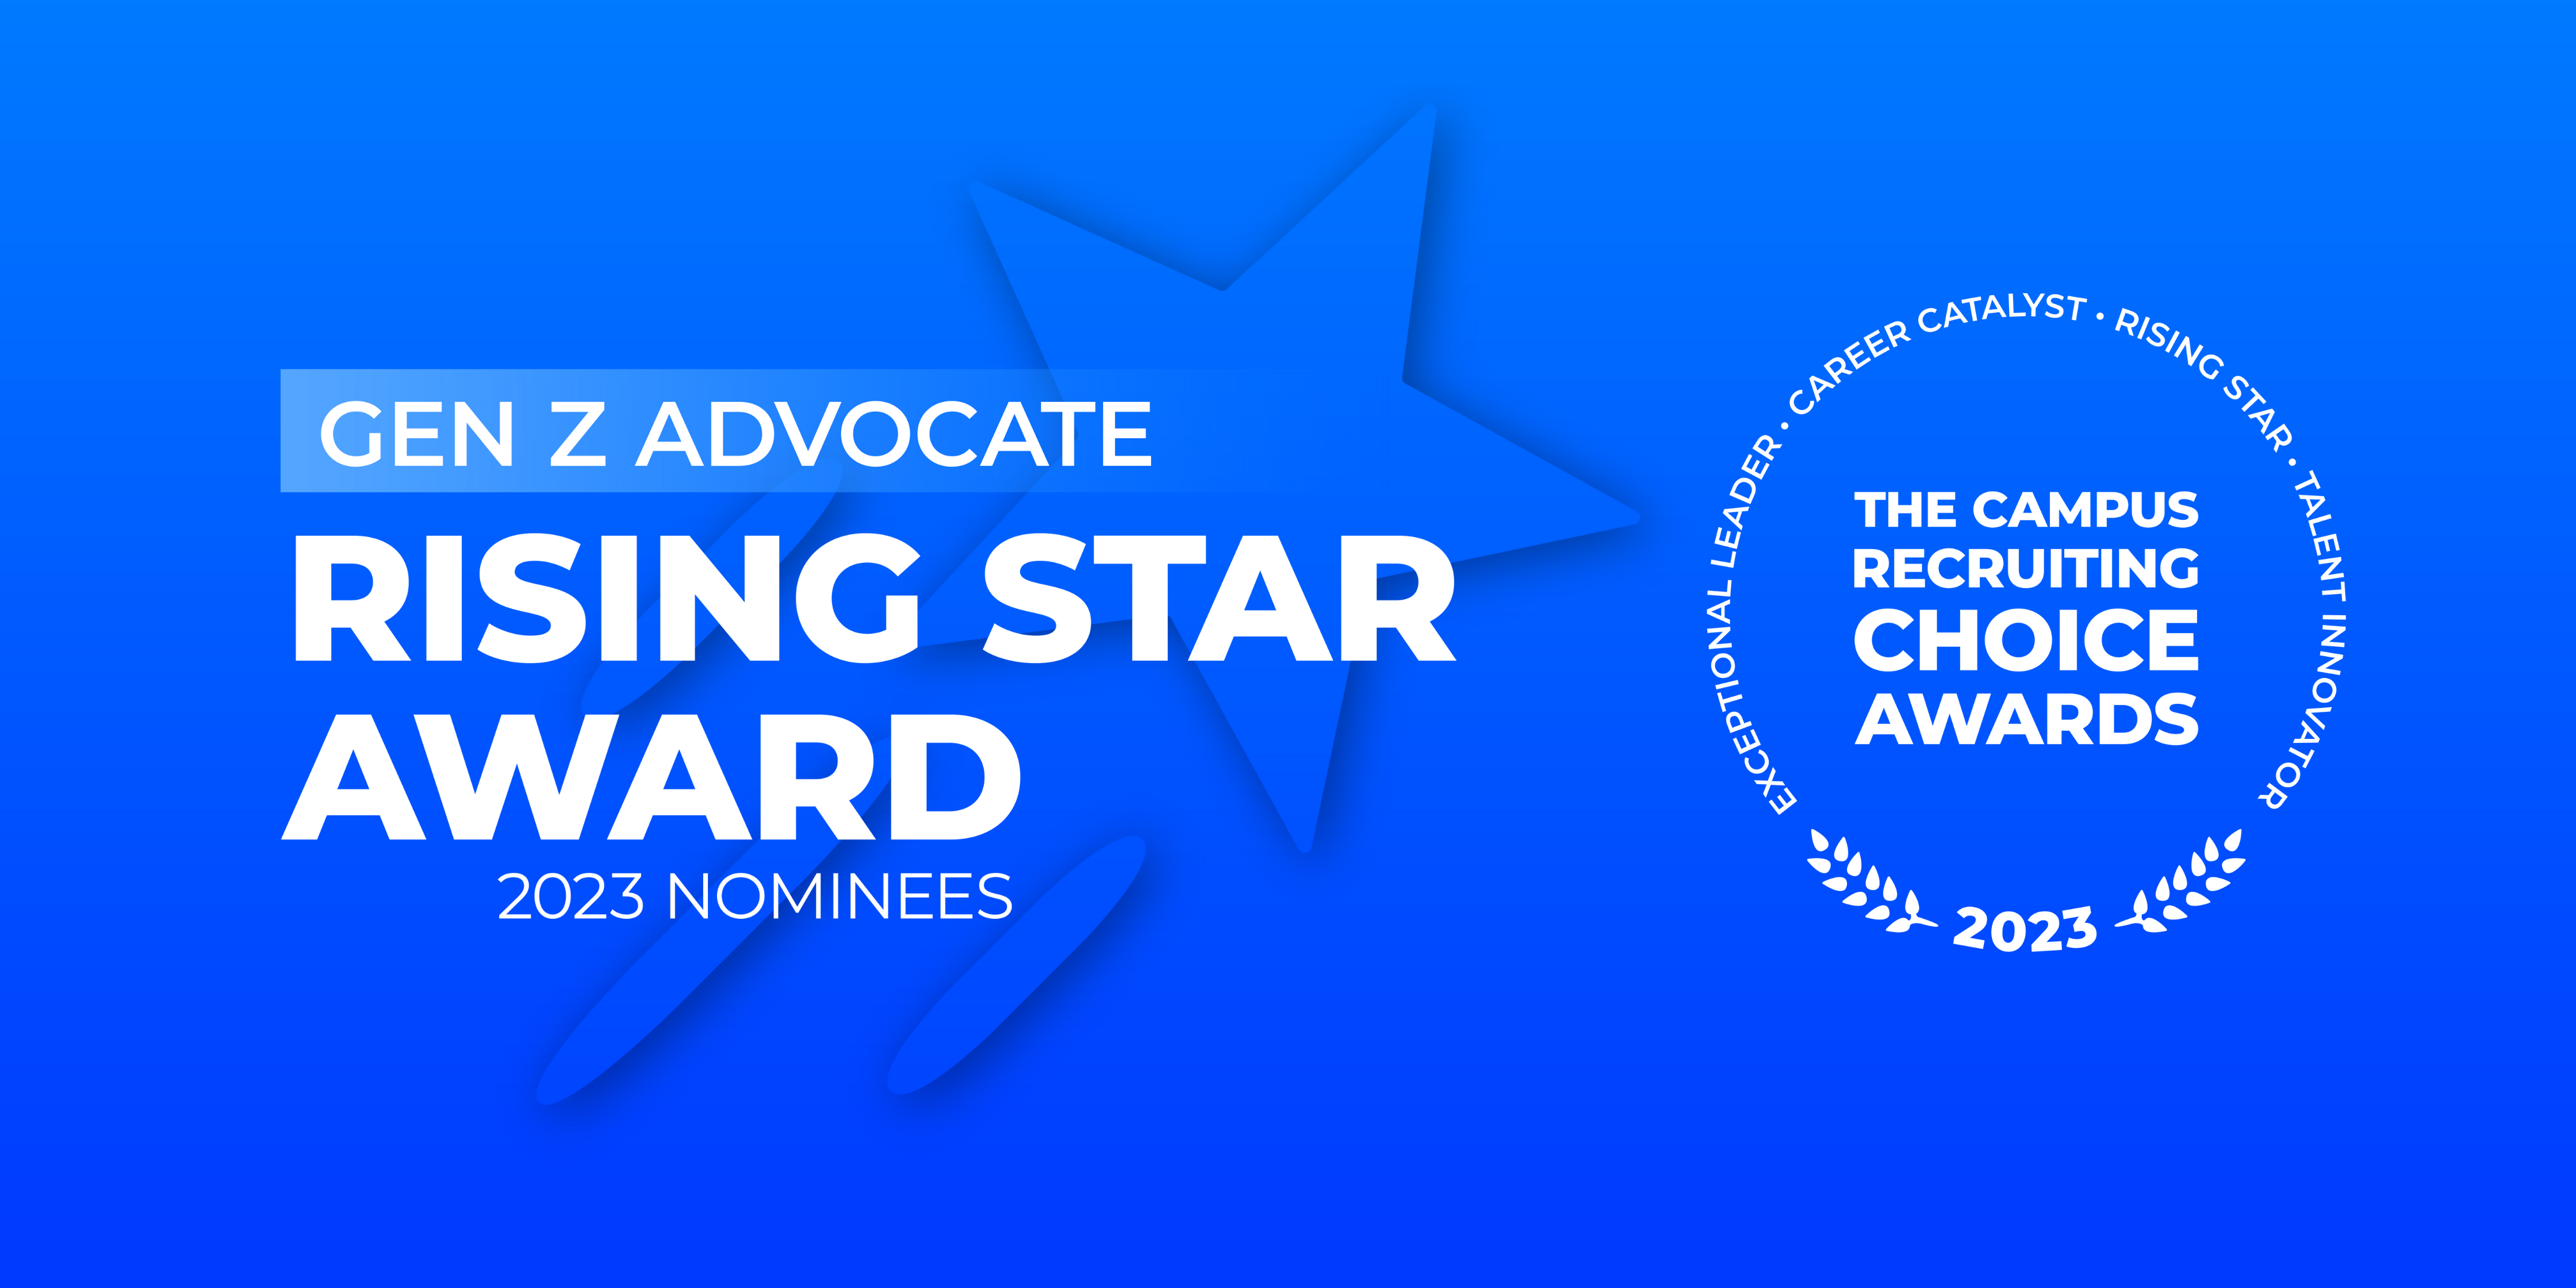 Rising Star Award - Gen Z Advocate - 2023 Nominees